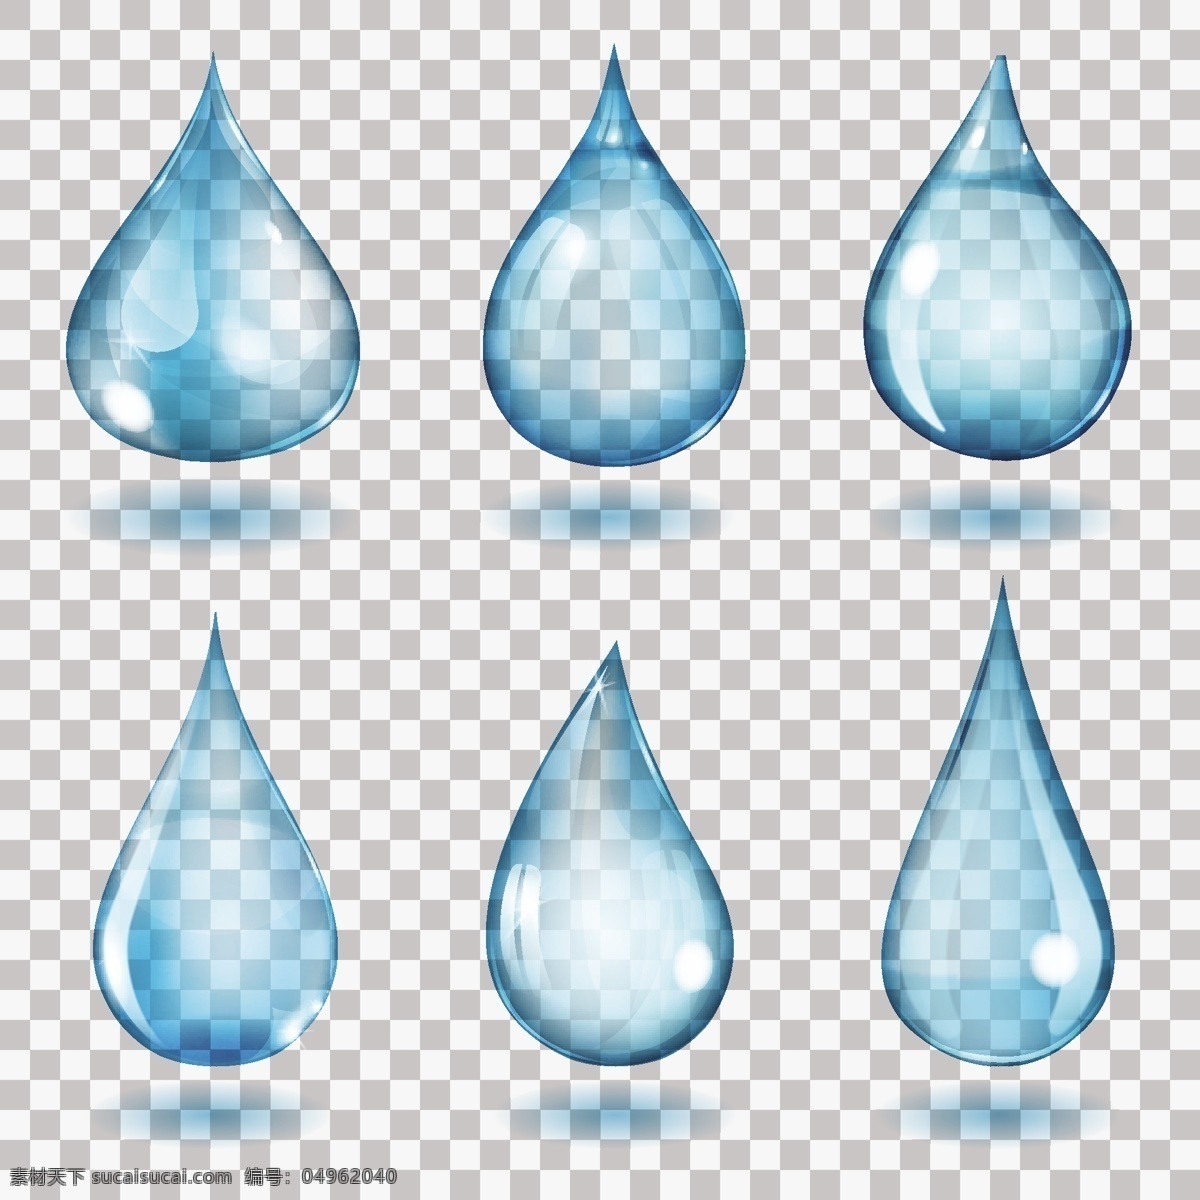 透明水滴雨滴 雨滴 液体 水滴 透明水珠 梦幻水滴 蓝色水滴 卡通水滴 银色水滴 透明水滴 透明雨滴 灰色